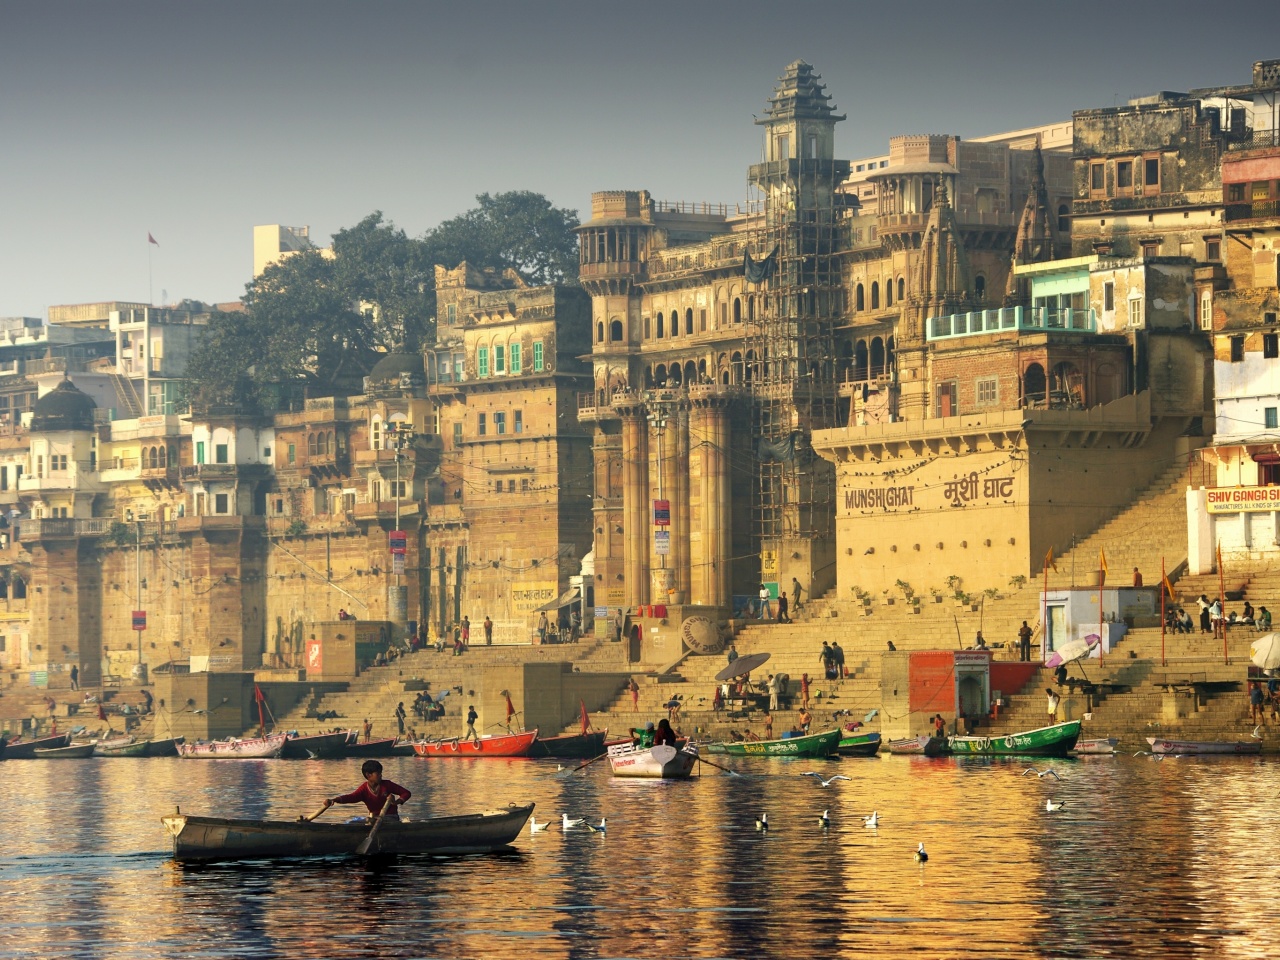 Обои Varanasi City in India 1280x960